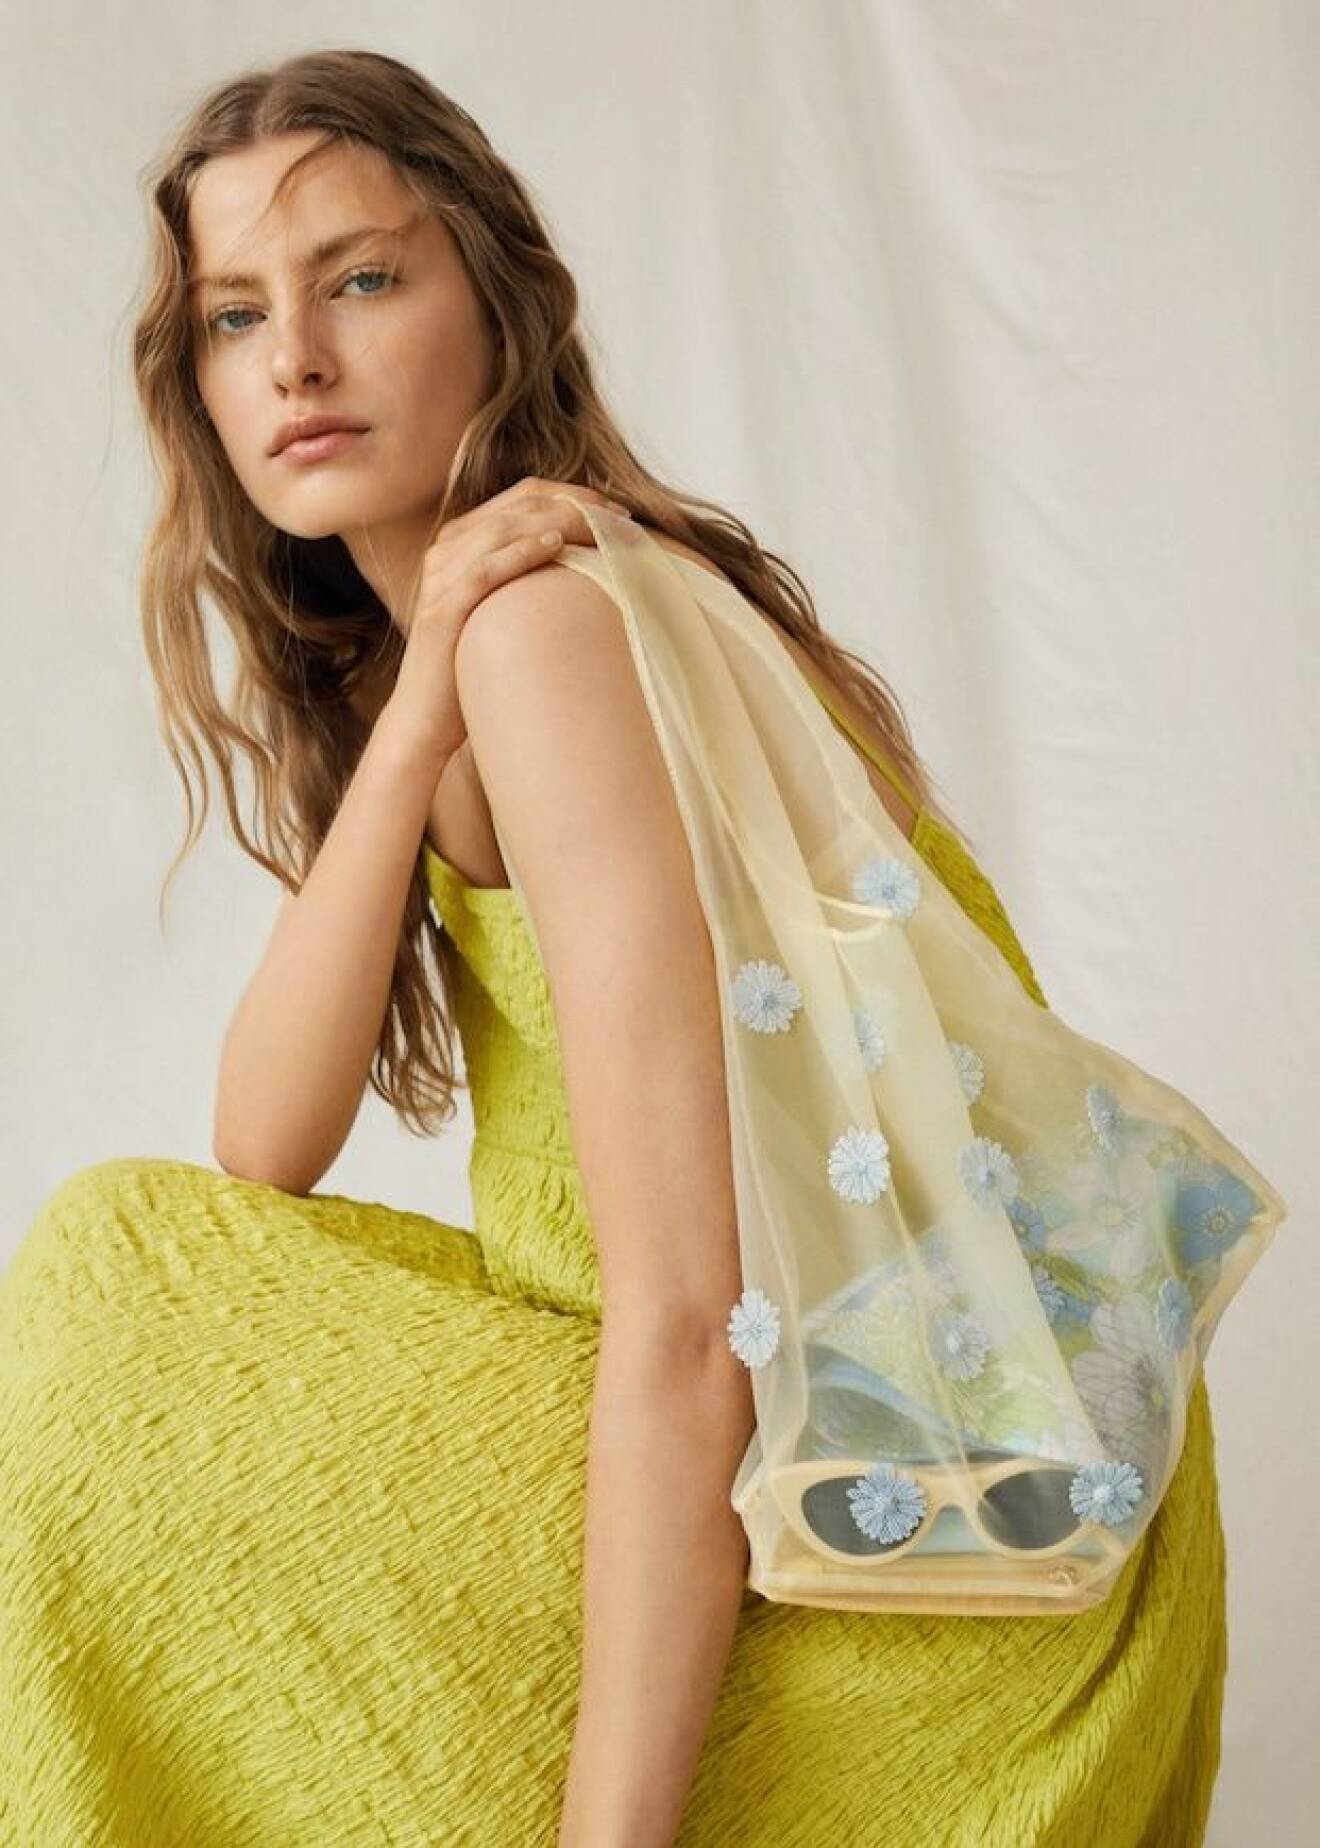 Modell med knallgul klänning och en ljusgul väska i påsmodell över axeln. Transparent väska i organza med ljusblå blommor i 3D på. Väska från Mango.